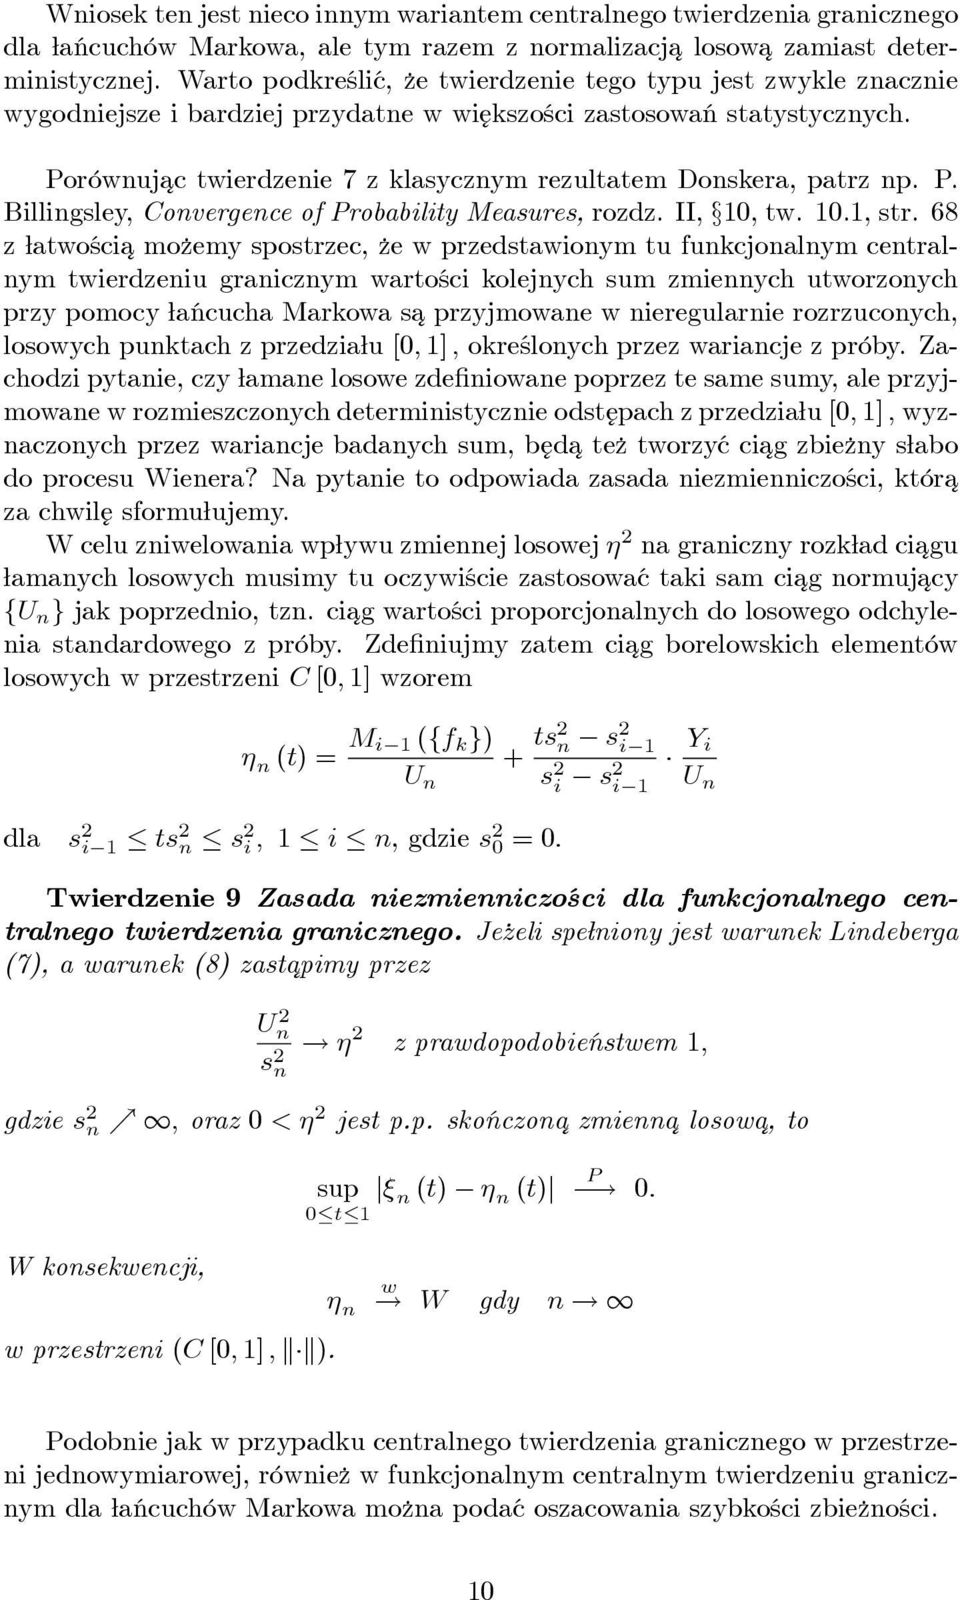 Porównujac ¾ twierdzenie 7 z klasycznym rezultatem Donskera, patrz np. P. Billingsley, Convergence of Probability Measures, rozdz. II, 0, tw. 0., str.